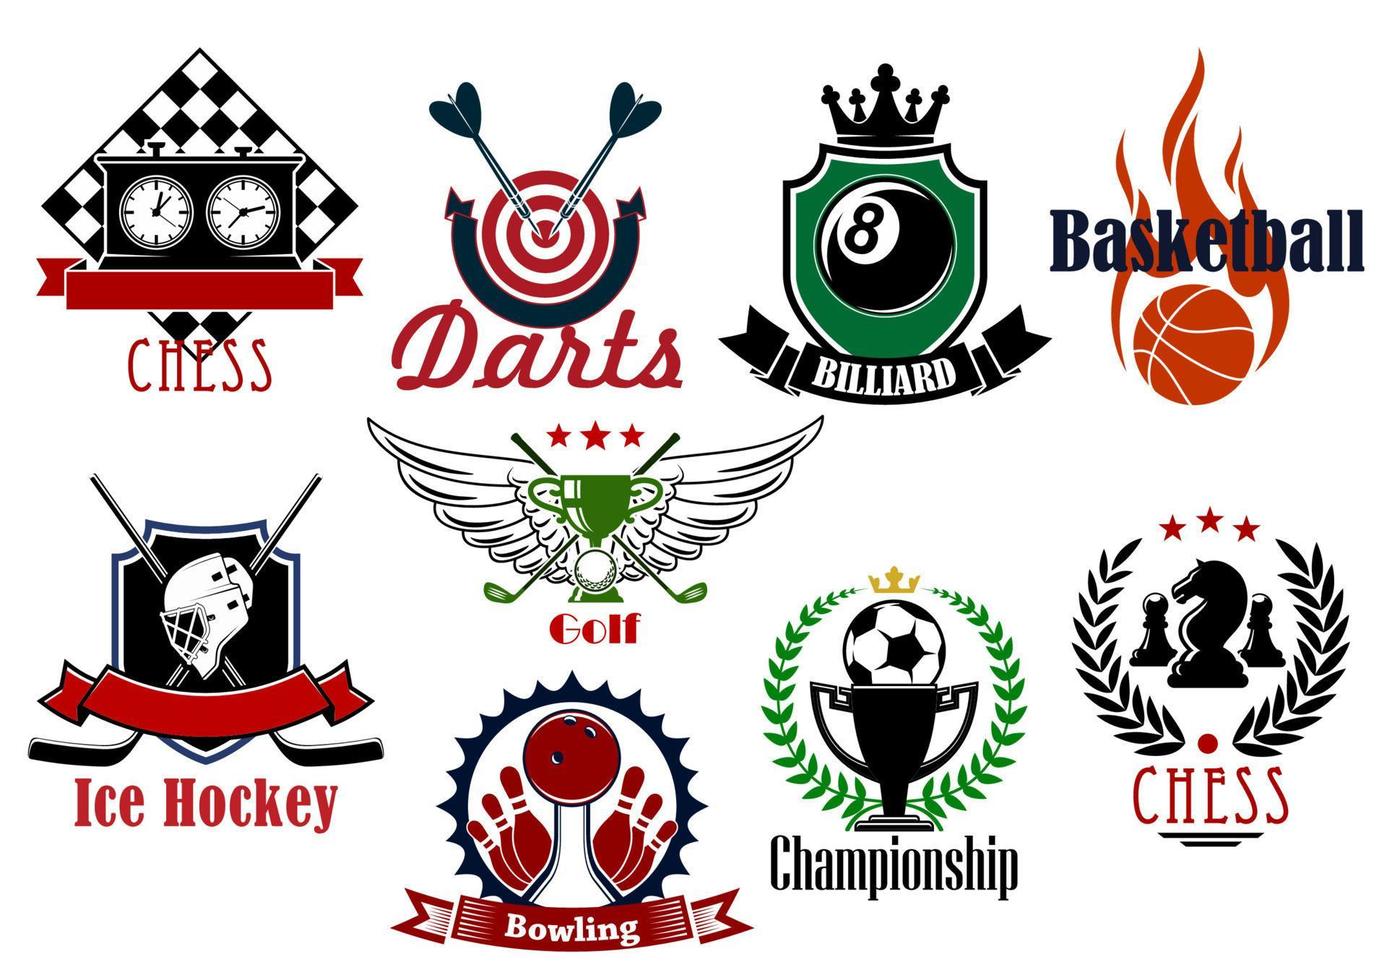 vários símbolos e ícones heráldicos de esportes vetor